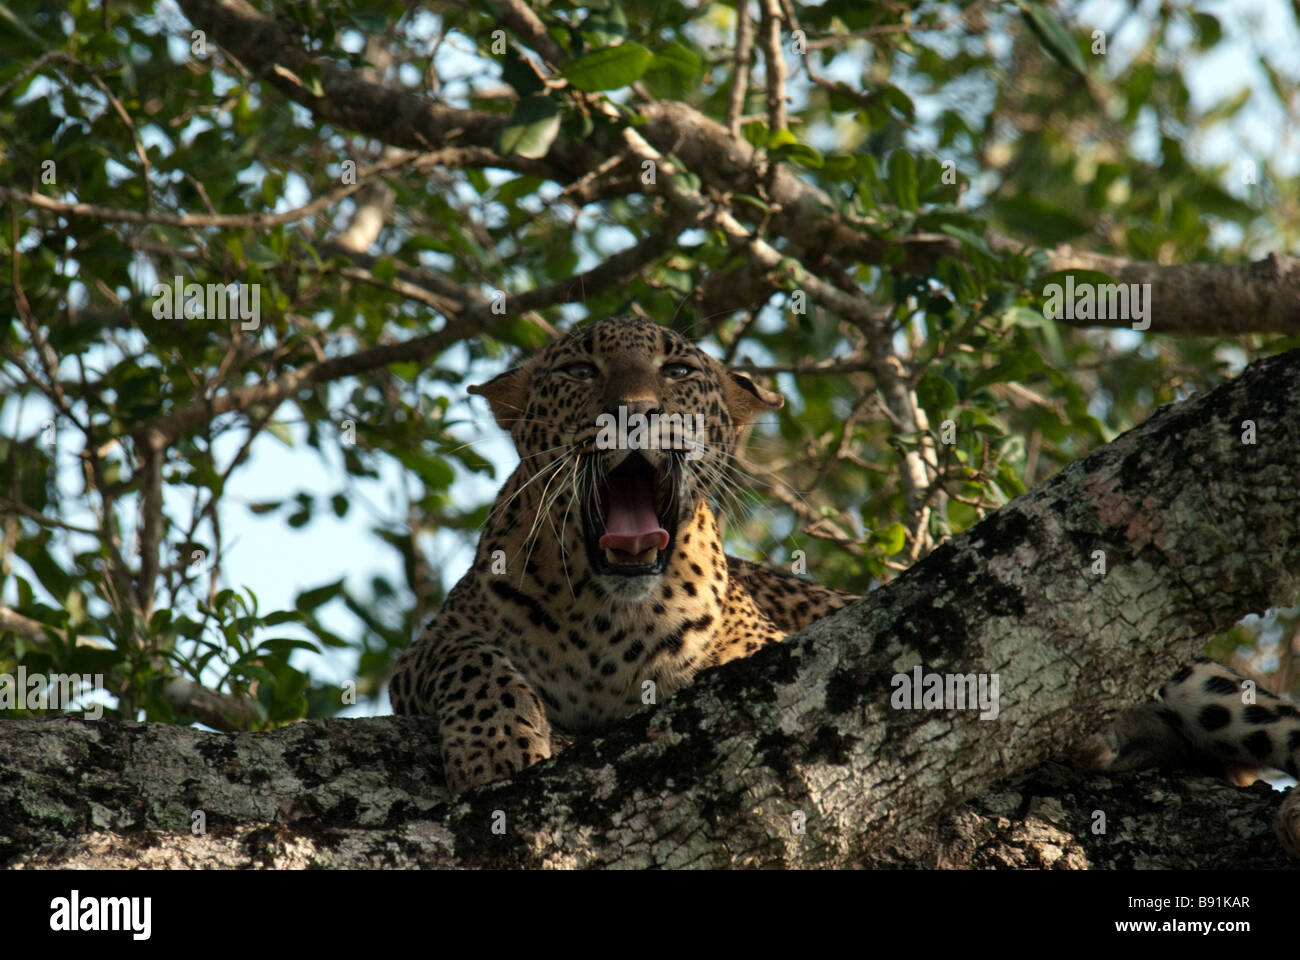 Un léopard révèle ses dents alors qu'il est assis dans un arbre dans le parc national de Yala / Ruhunu, Sri Lanka Banque D'Images